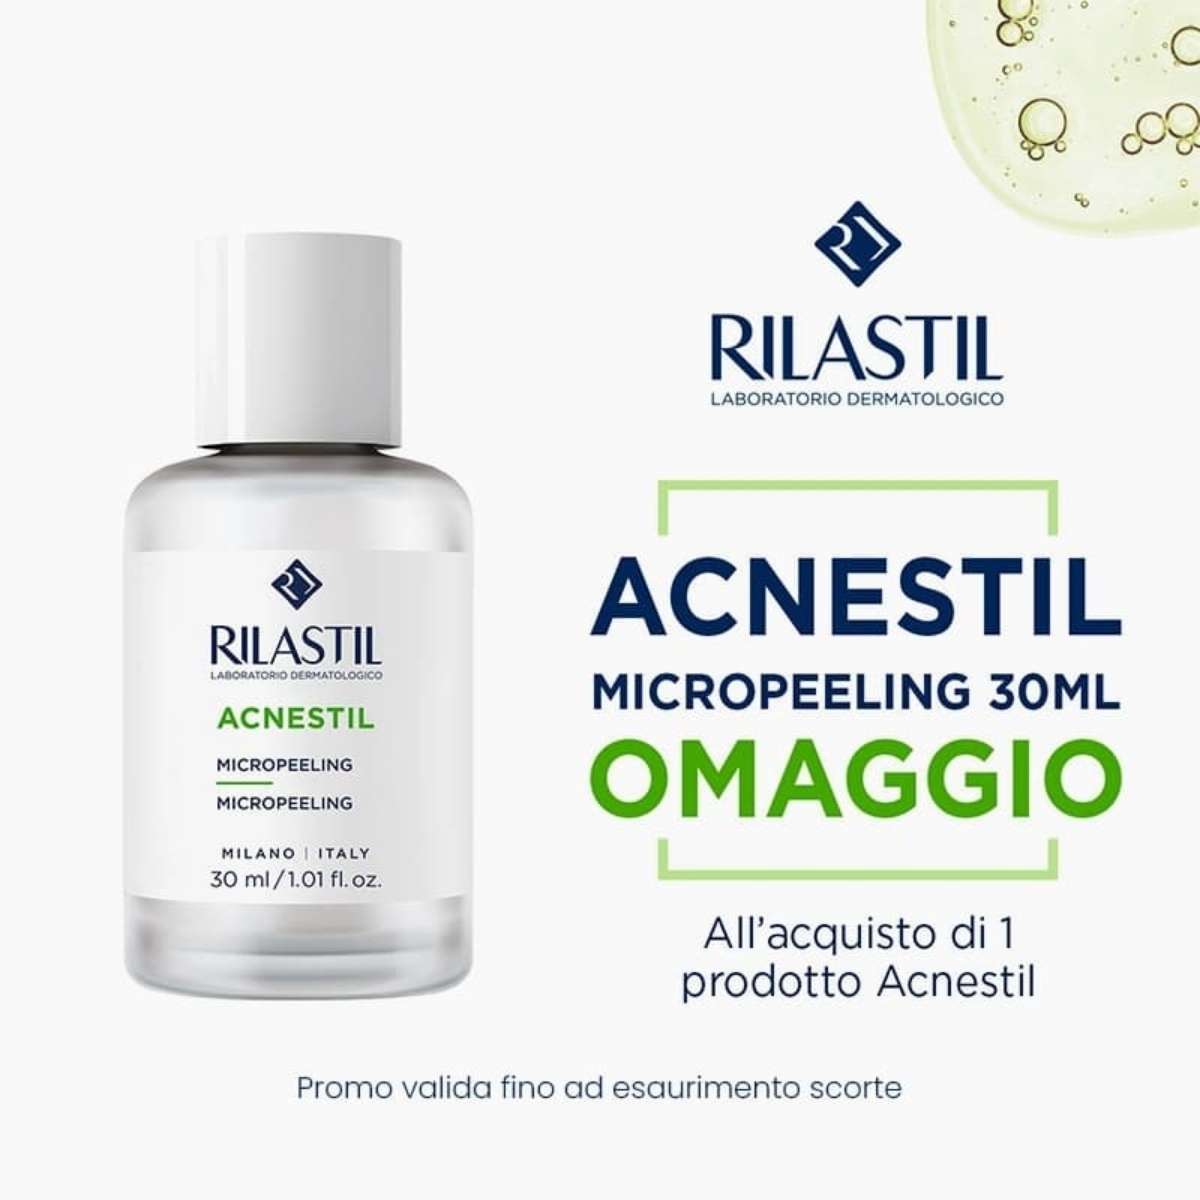 banner promozionale Rilastil Acnestil micropeeling omaggio mobile